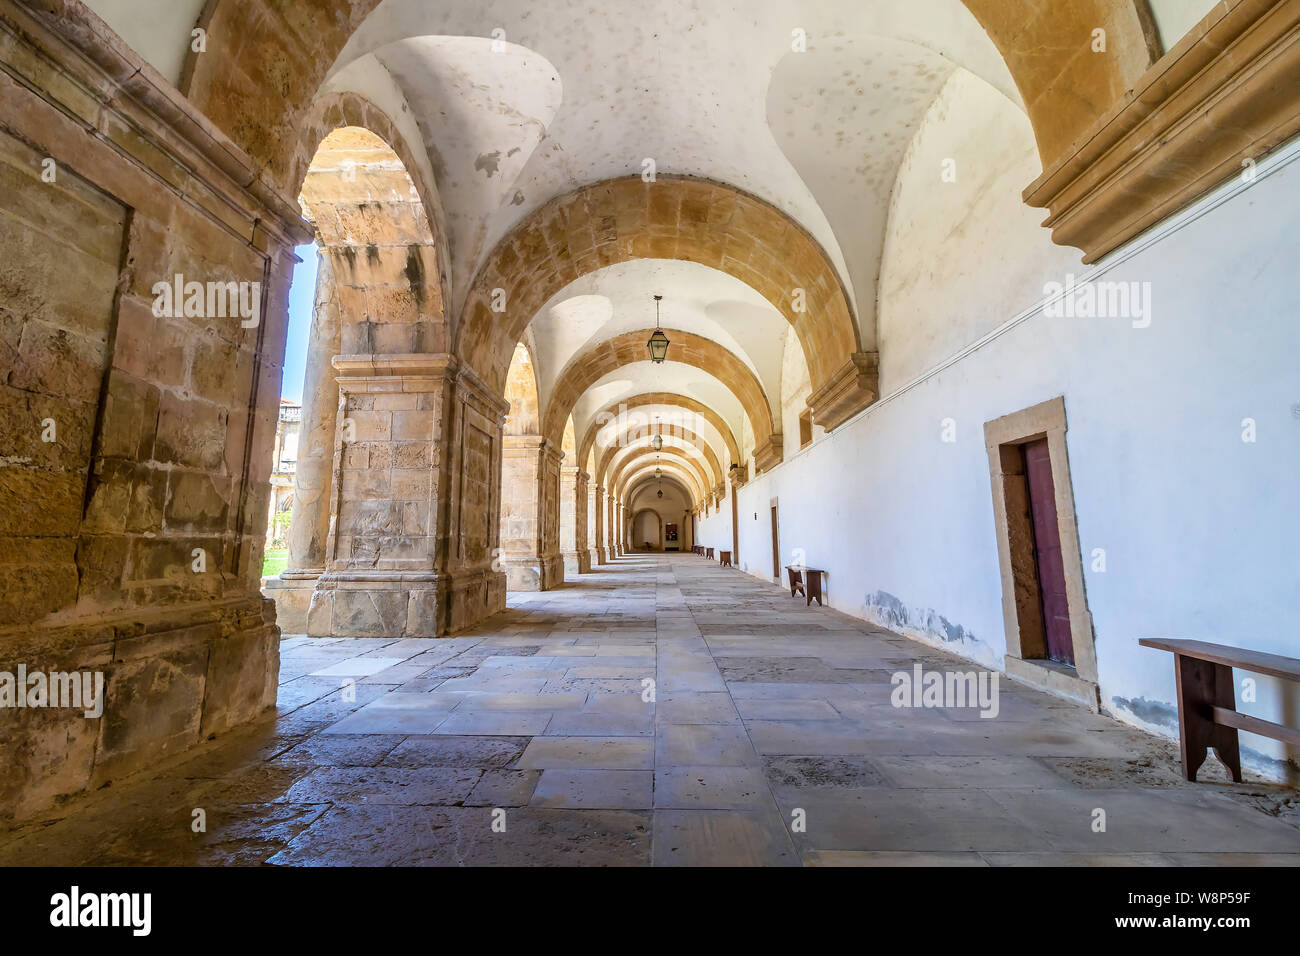 Coimbra, Portogallo, luglio 18, 2019: il chiostro in stile manierista colonnato manuelina nel chiostro del Monastero di Santa Clara a Nova (Santa Chiara Mona Foto Stock